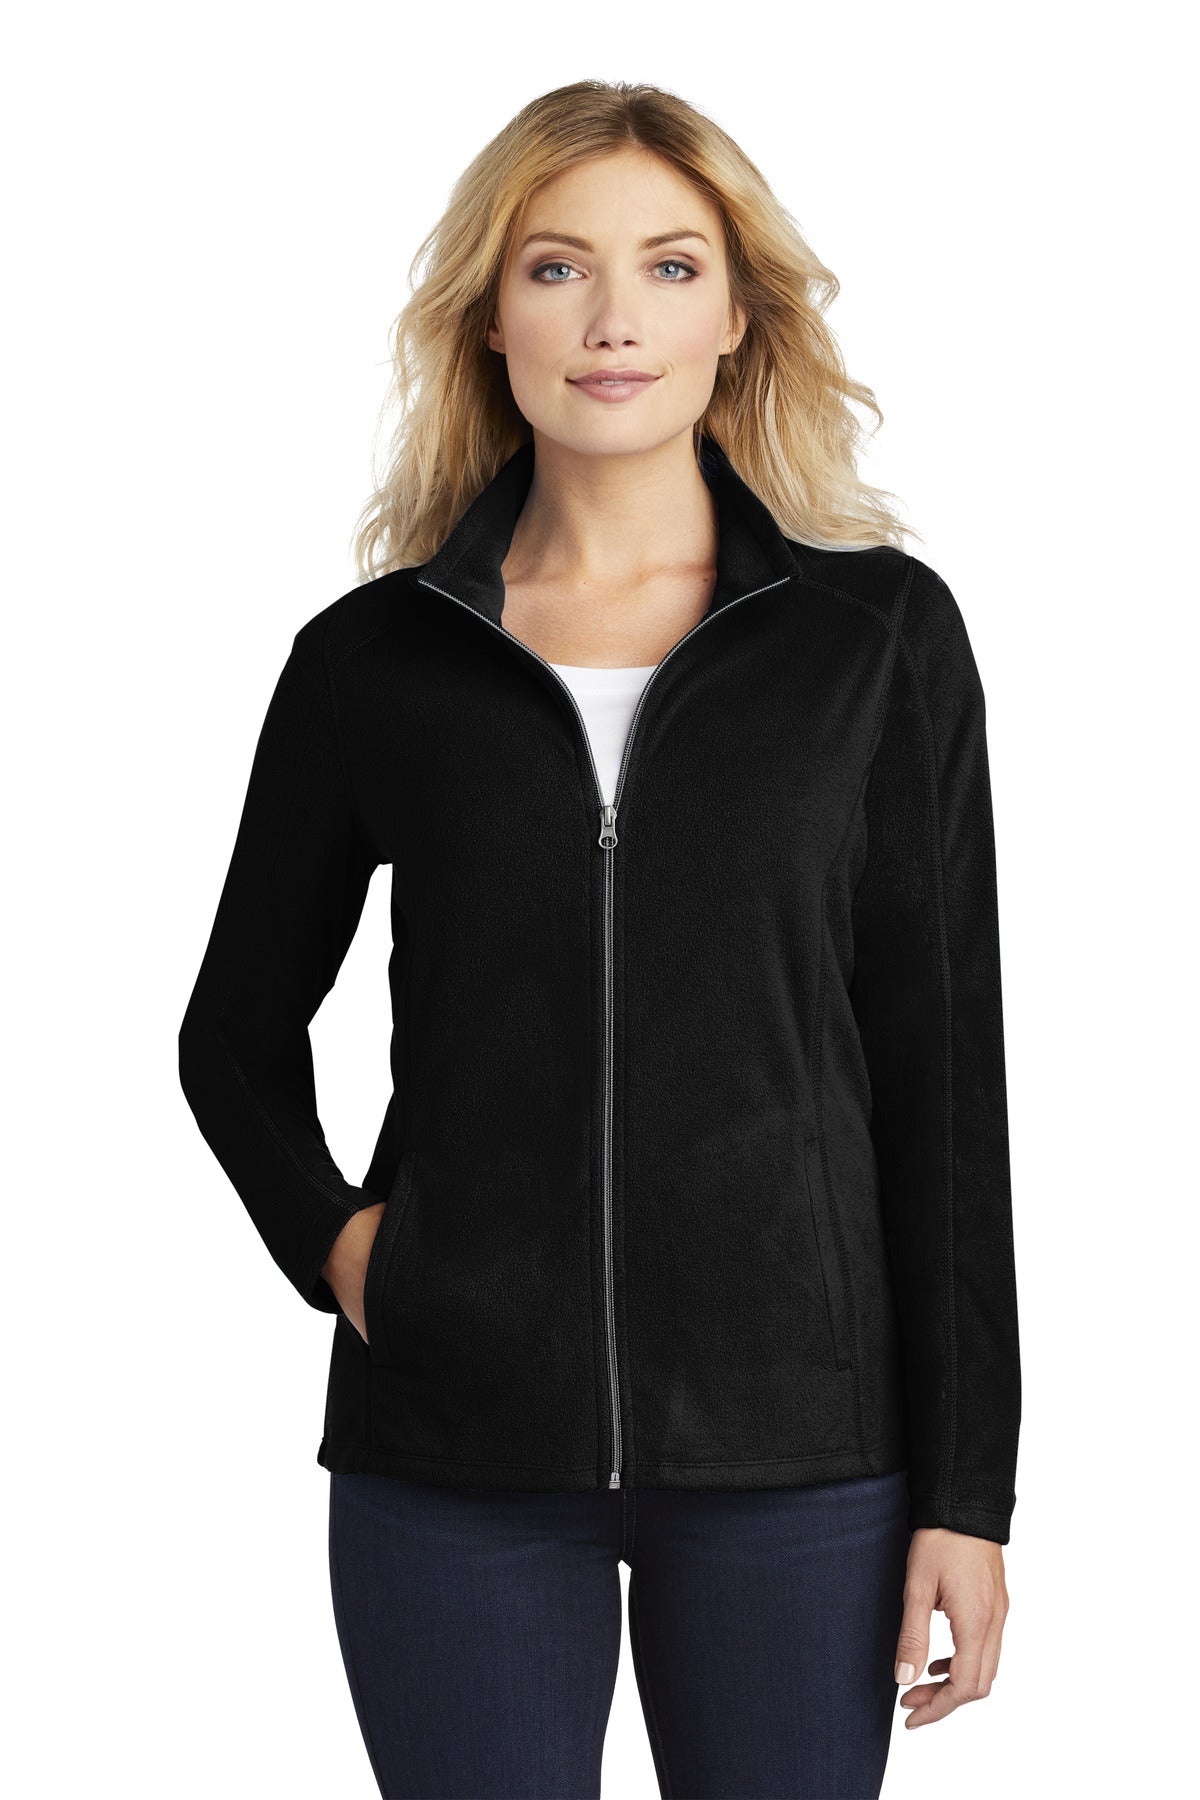 Port Authority® Ladies Microfleece Jacket. L223